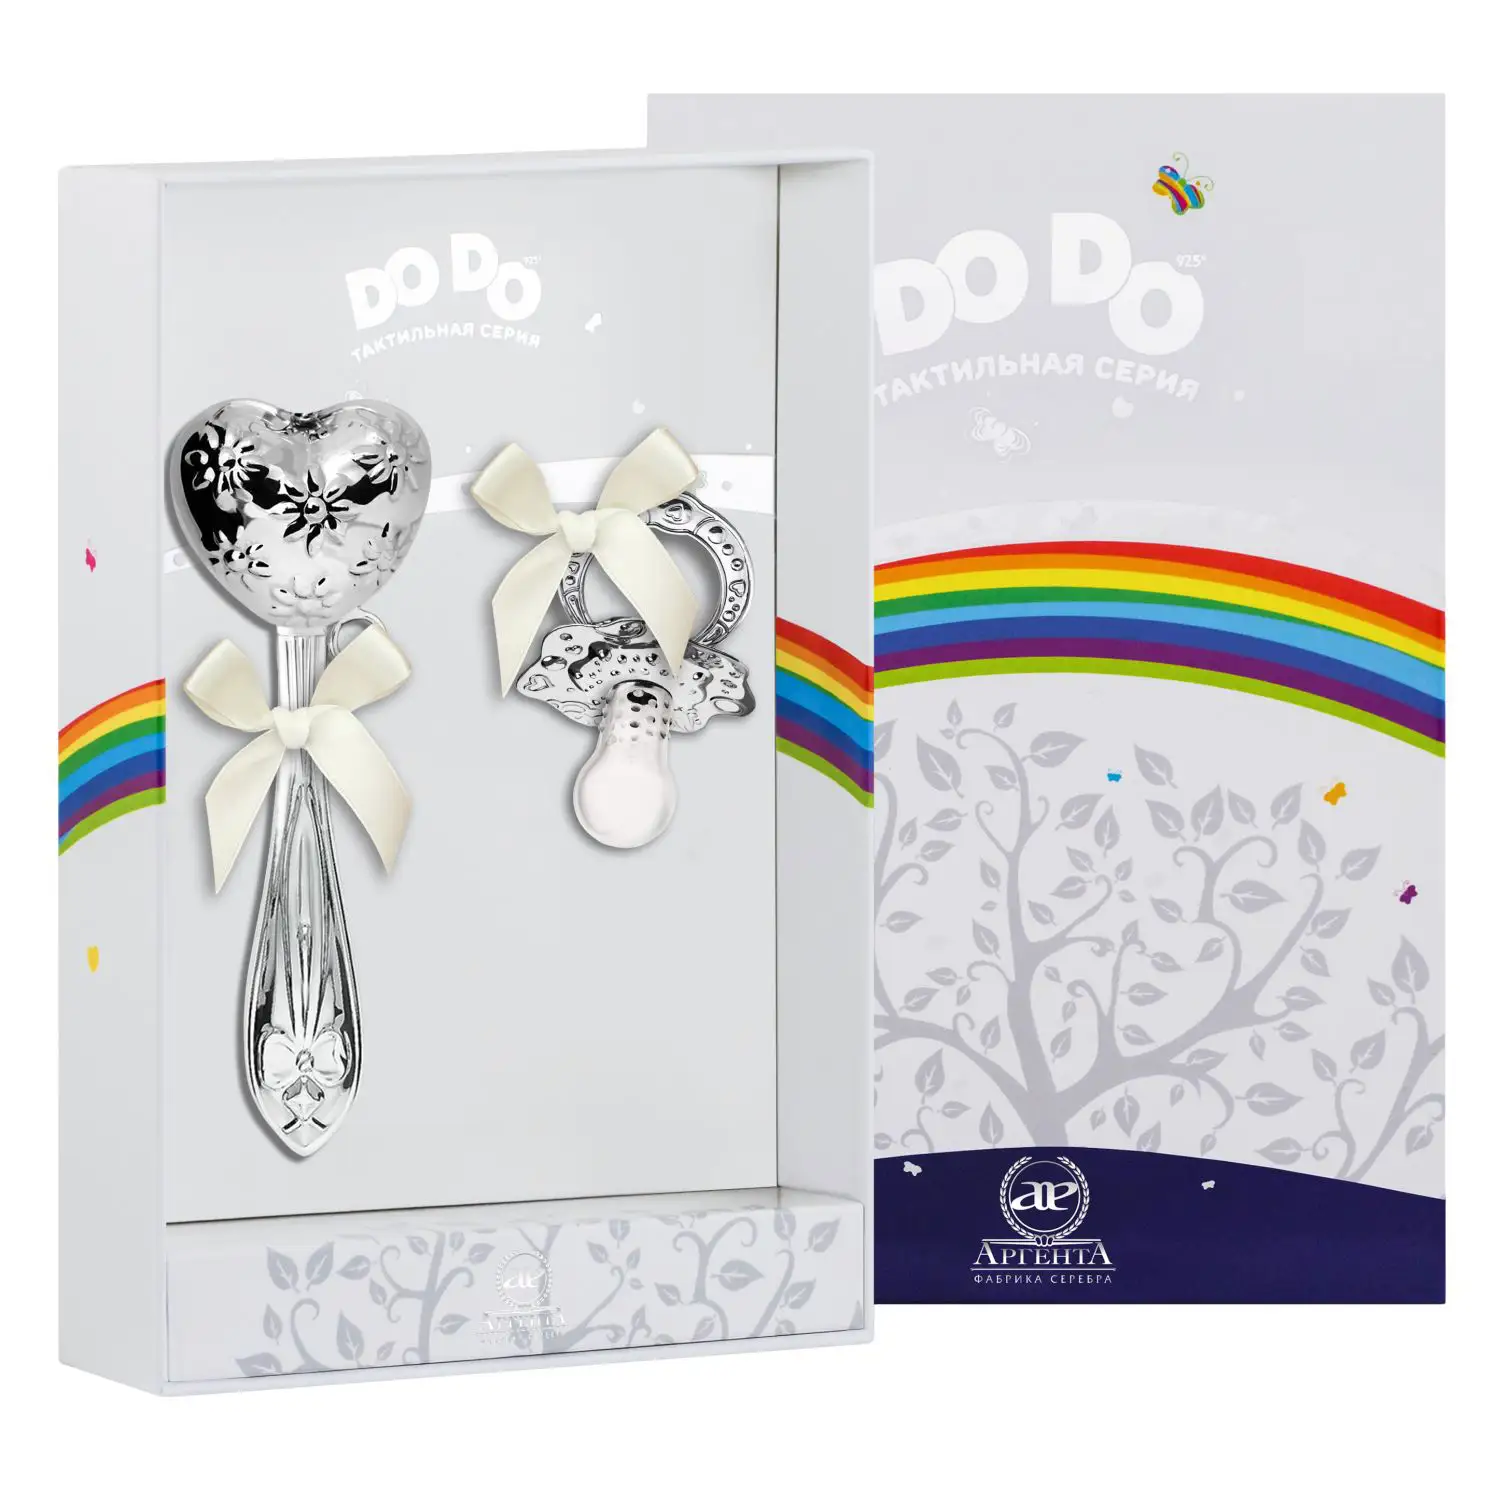 Набор для малышей DODO Сердце с цветами: погремушка и сувенир-пустышка (Серебро 925) набор для малышей dodo мишка малышка кружка погремушка сувенир пустышка серебро 925